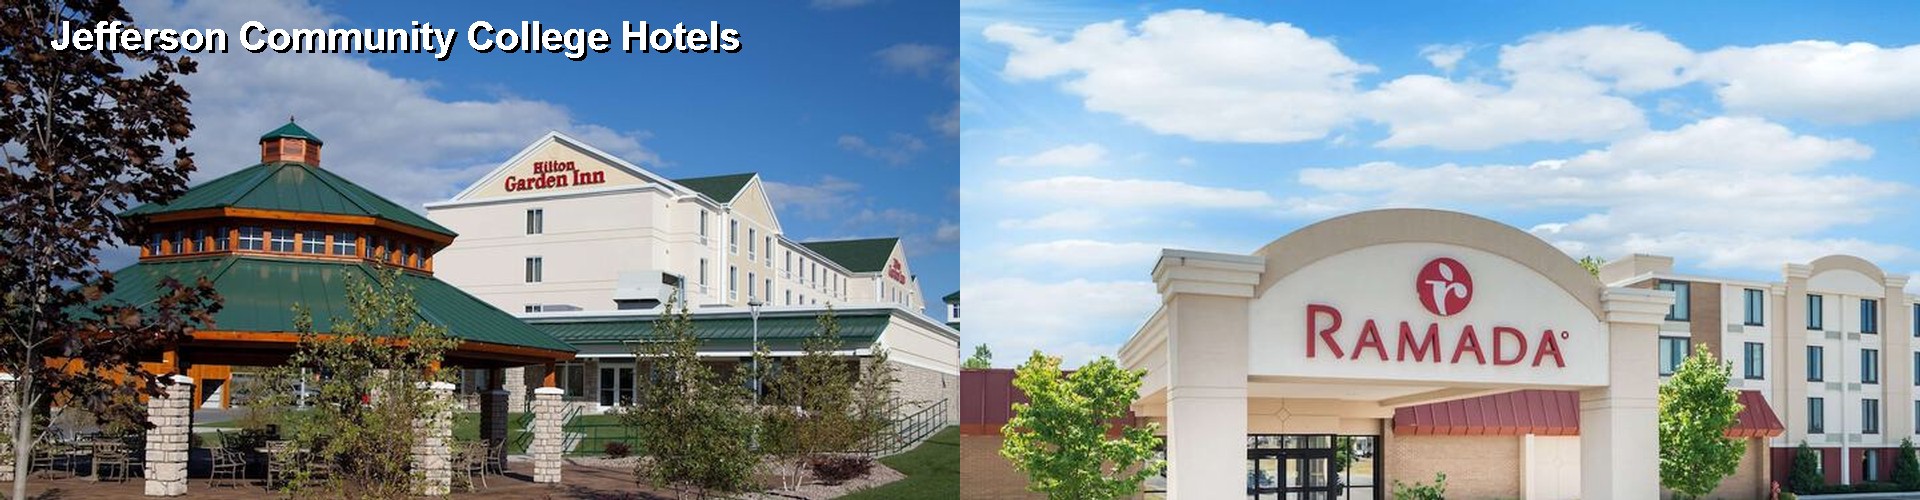 5 Best Hotels near Jefferson Community College